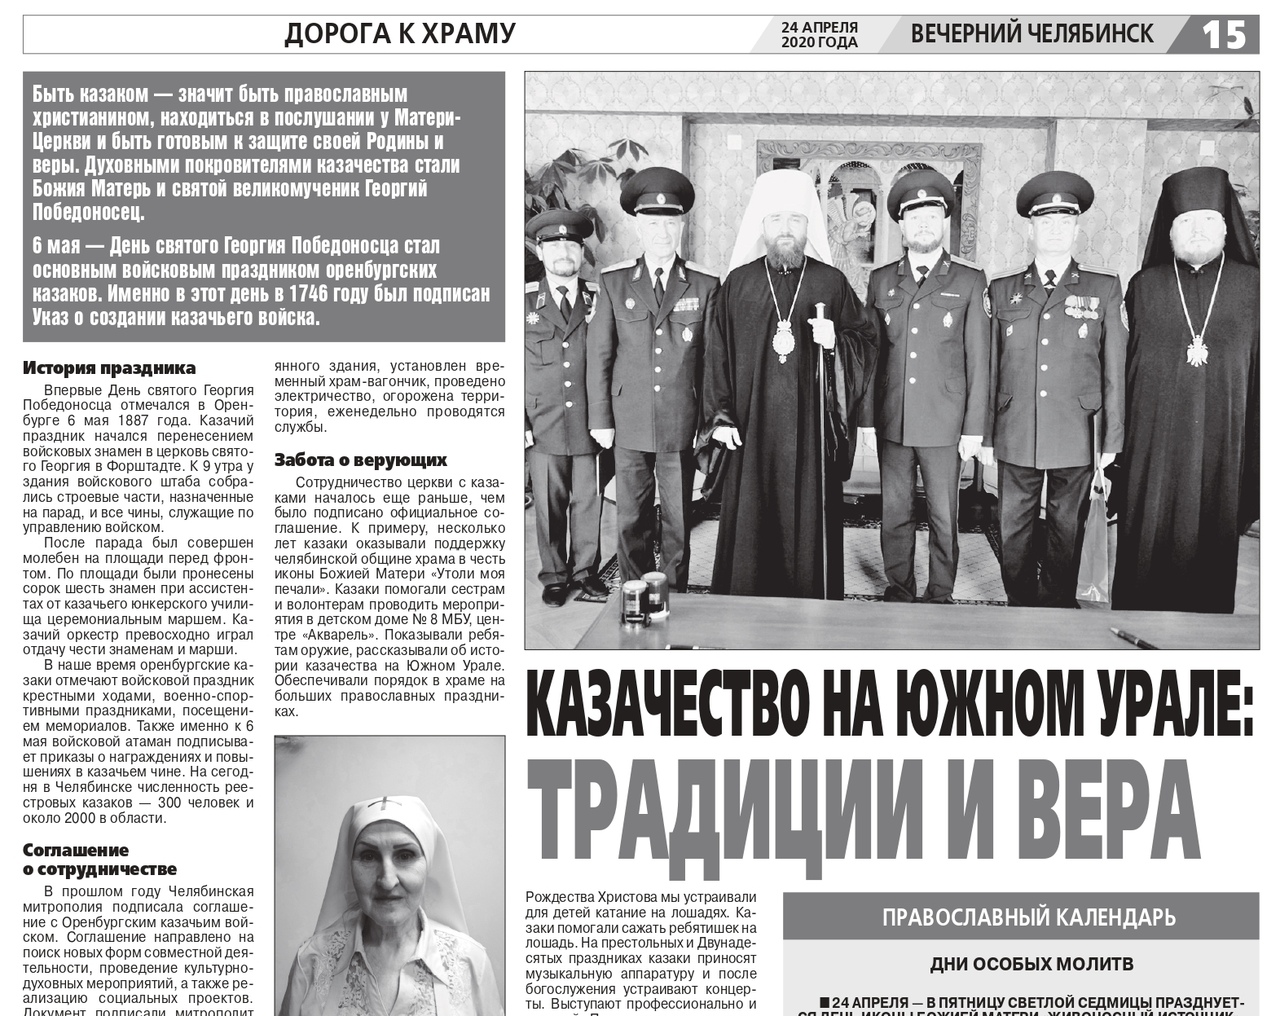 Редакция газеты «Вечерний Челябинск» опубликовала статью о деятельности казаков Оренбургского казачьего войска  